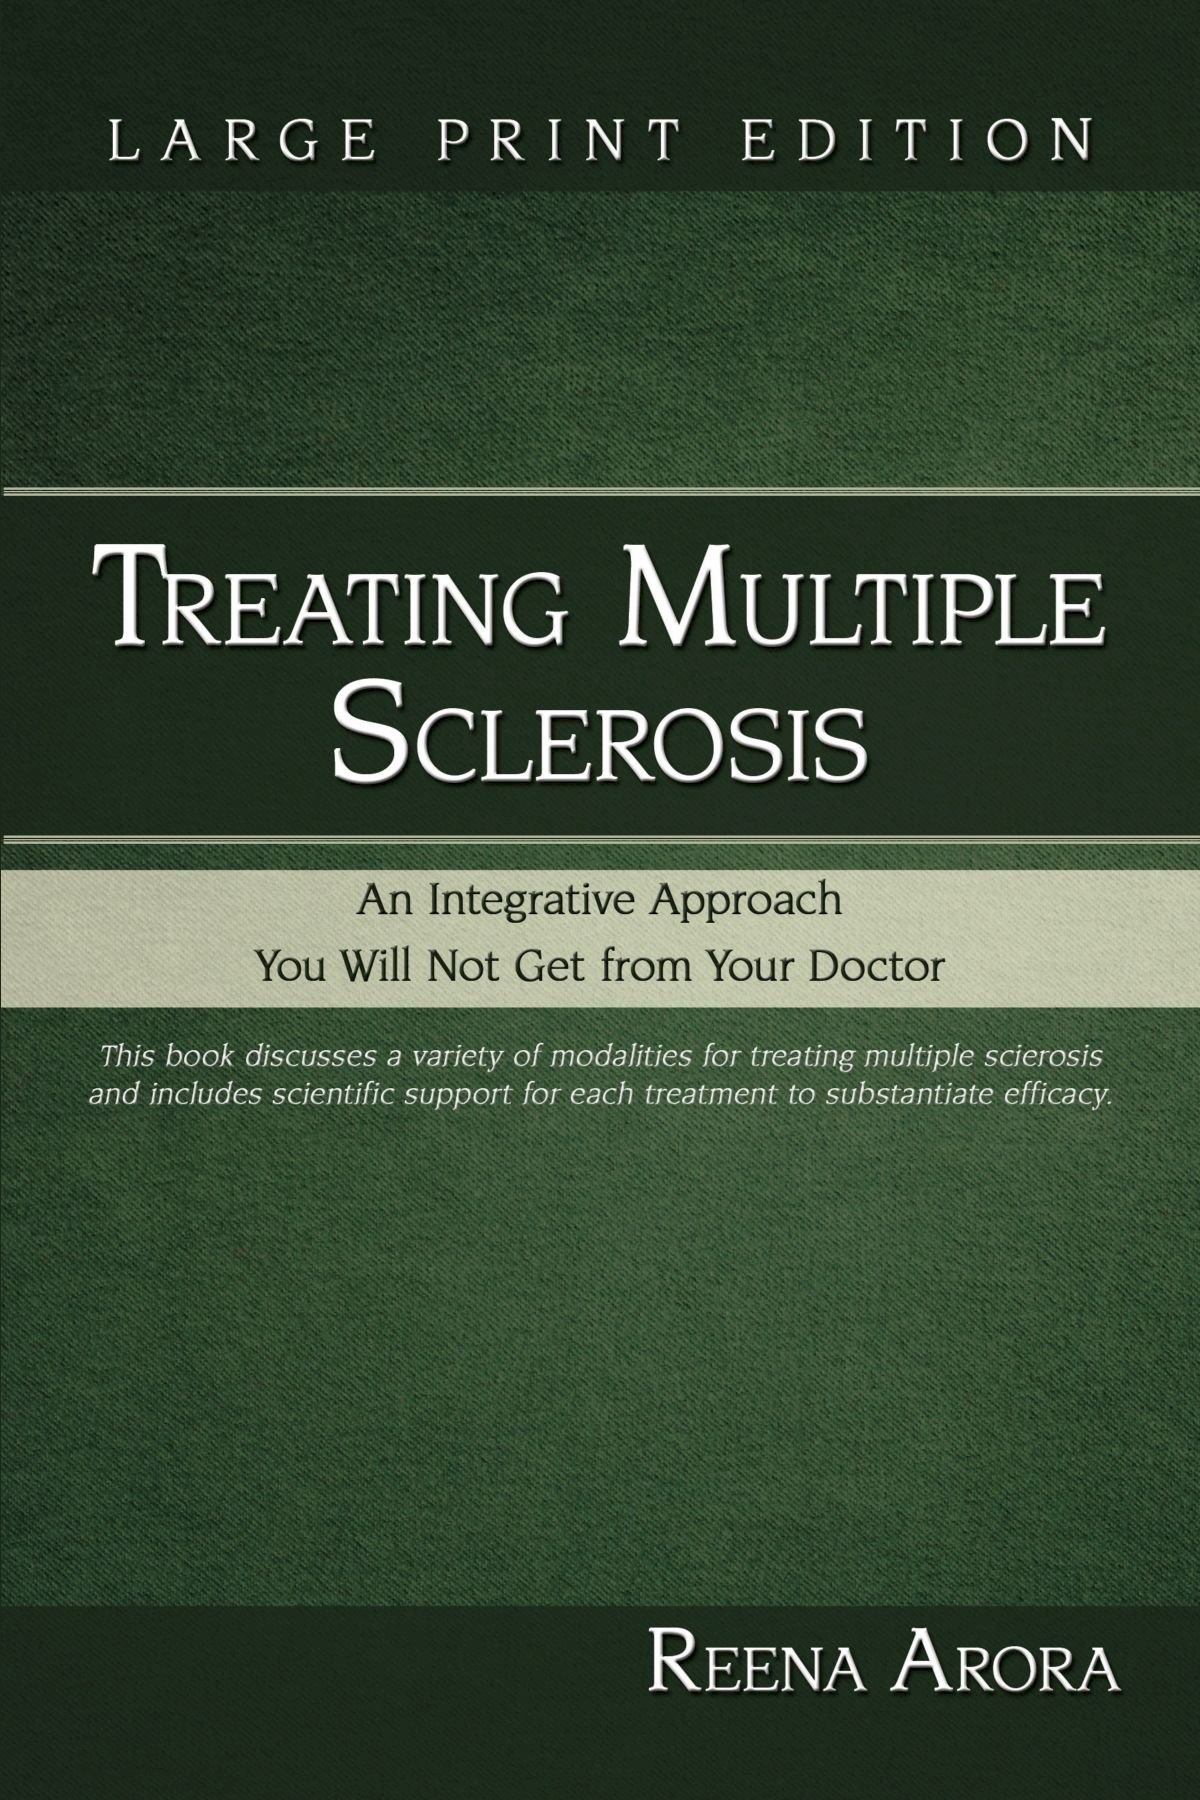 TreatingMultipleSclerosis